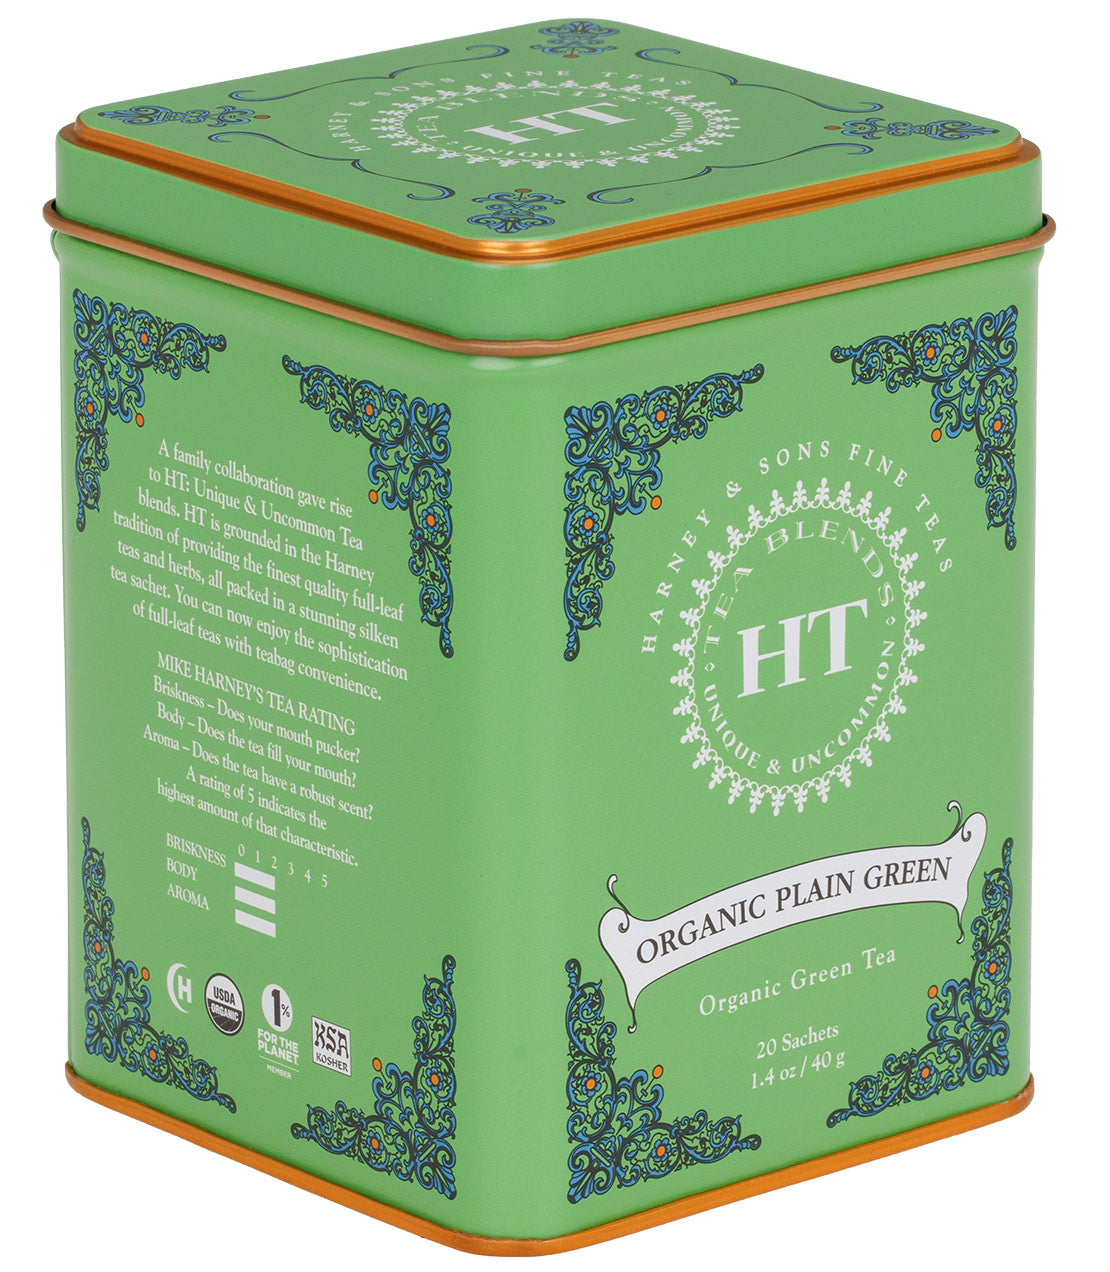 Organic Plain Green, HT Tin of 20 Sachets -   - Harney & Sons Fine Teas